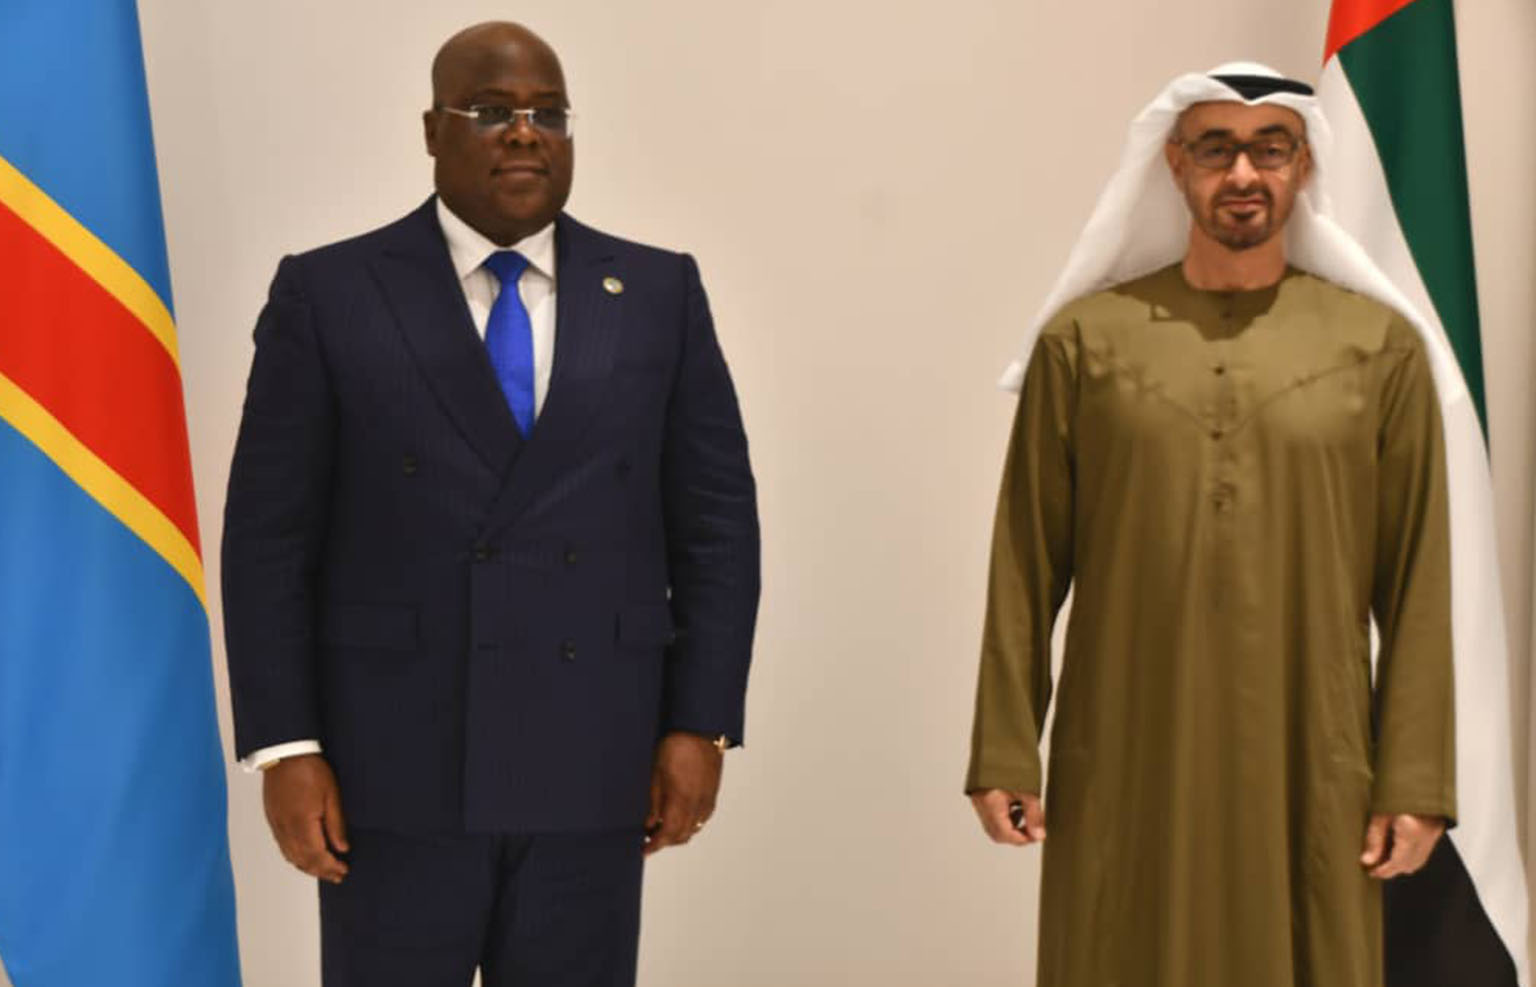 Les Emirats Arabes Unis annoncent 1 milliard $ d’investissement en RDC